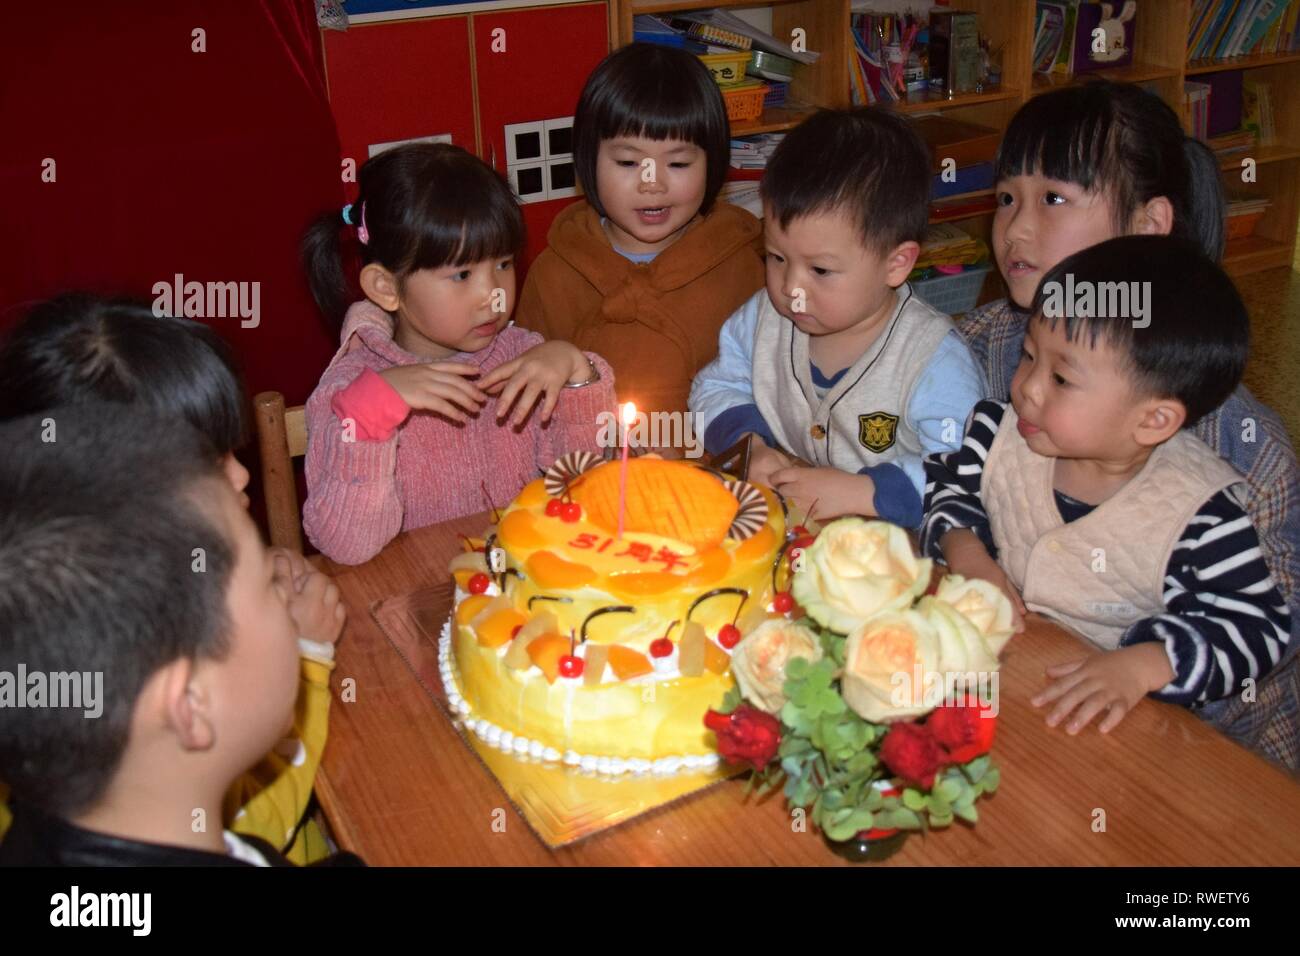 Canton Chine Circa 19 Mars Groupe D Enfants En Maternelle Assis Autour D Un Gateau D Anniversaire Pour Celebrer Un Anniversaire Photo Stock Alamy